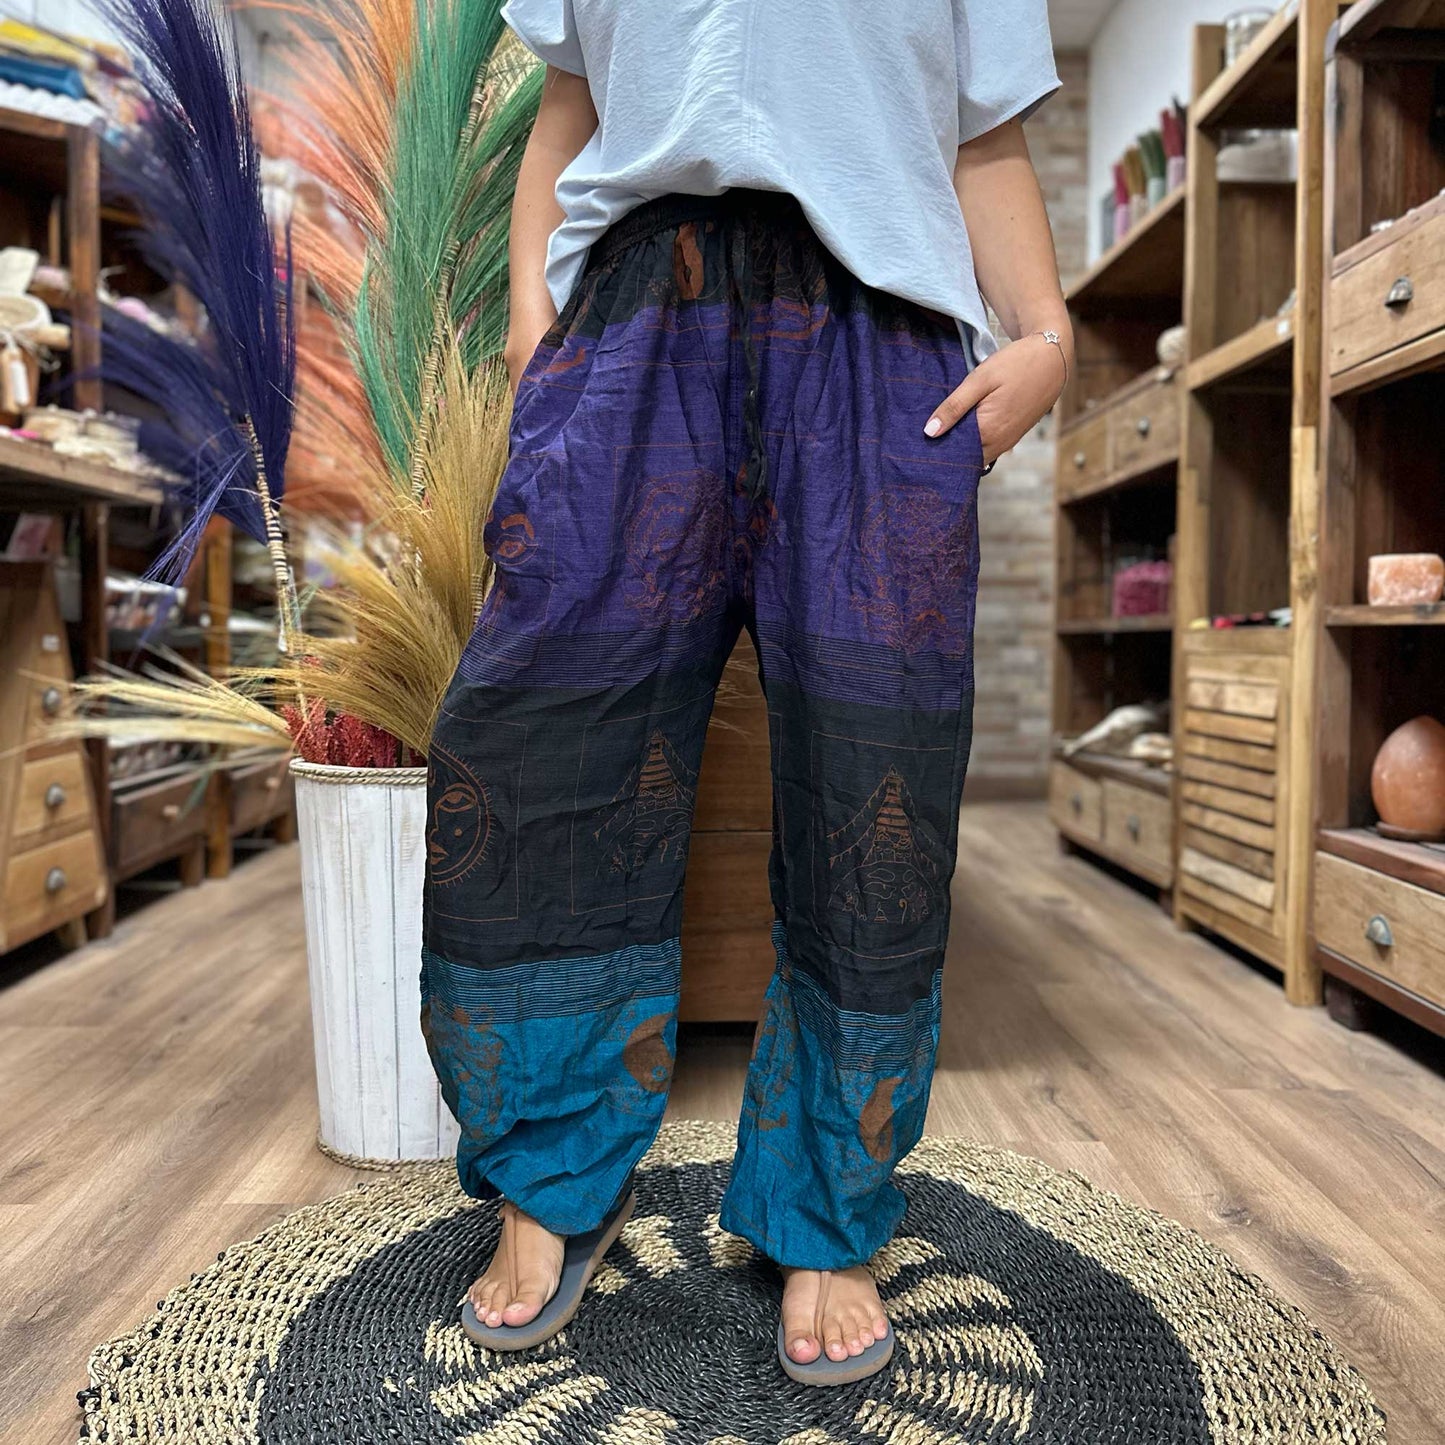 High Cross Himalayan Print on Purple Yoga Pants - CosmicSerenityShop